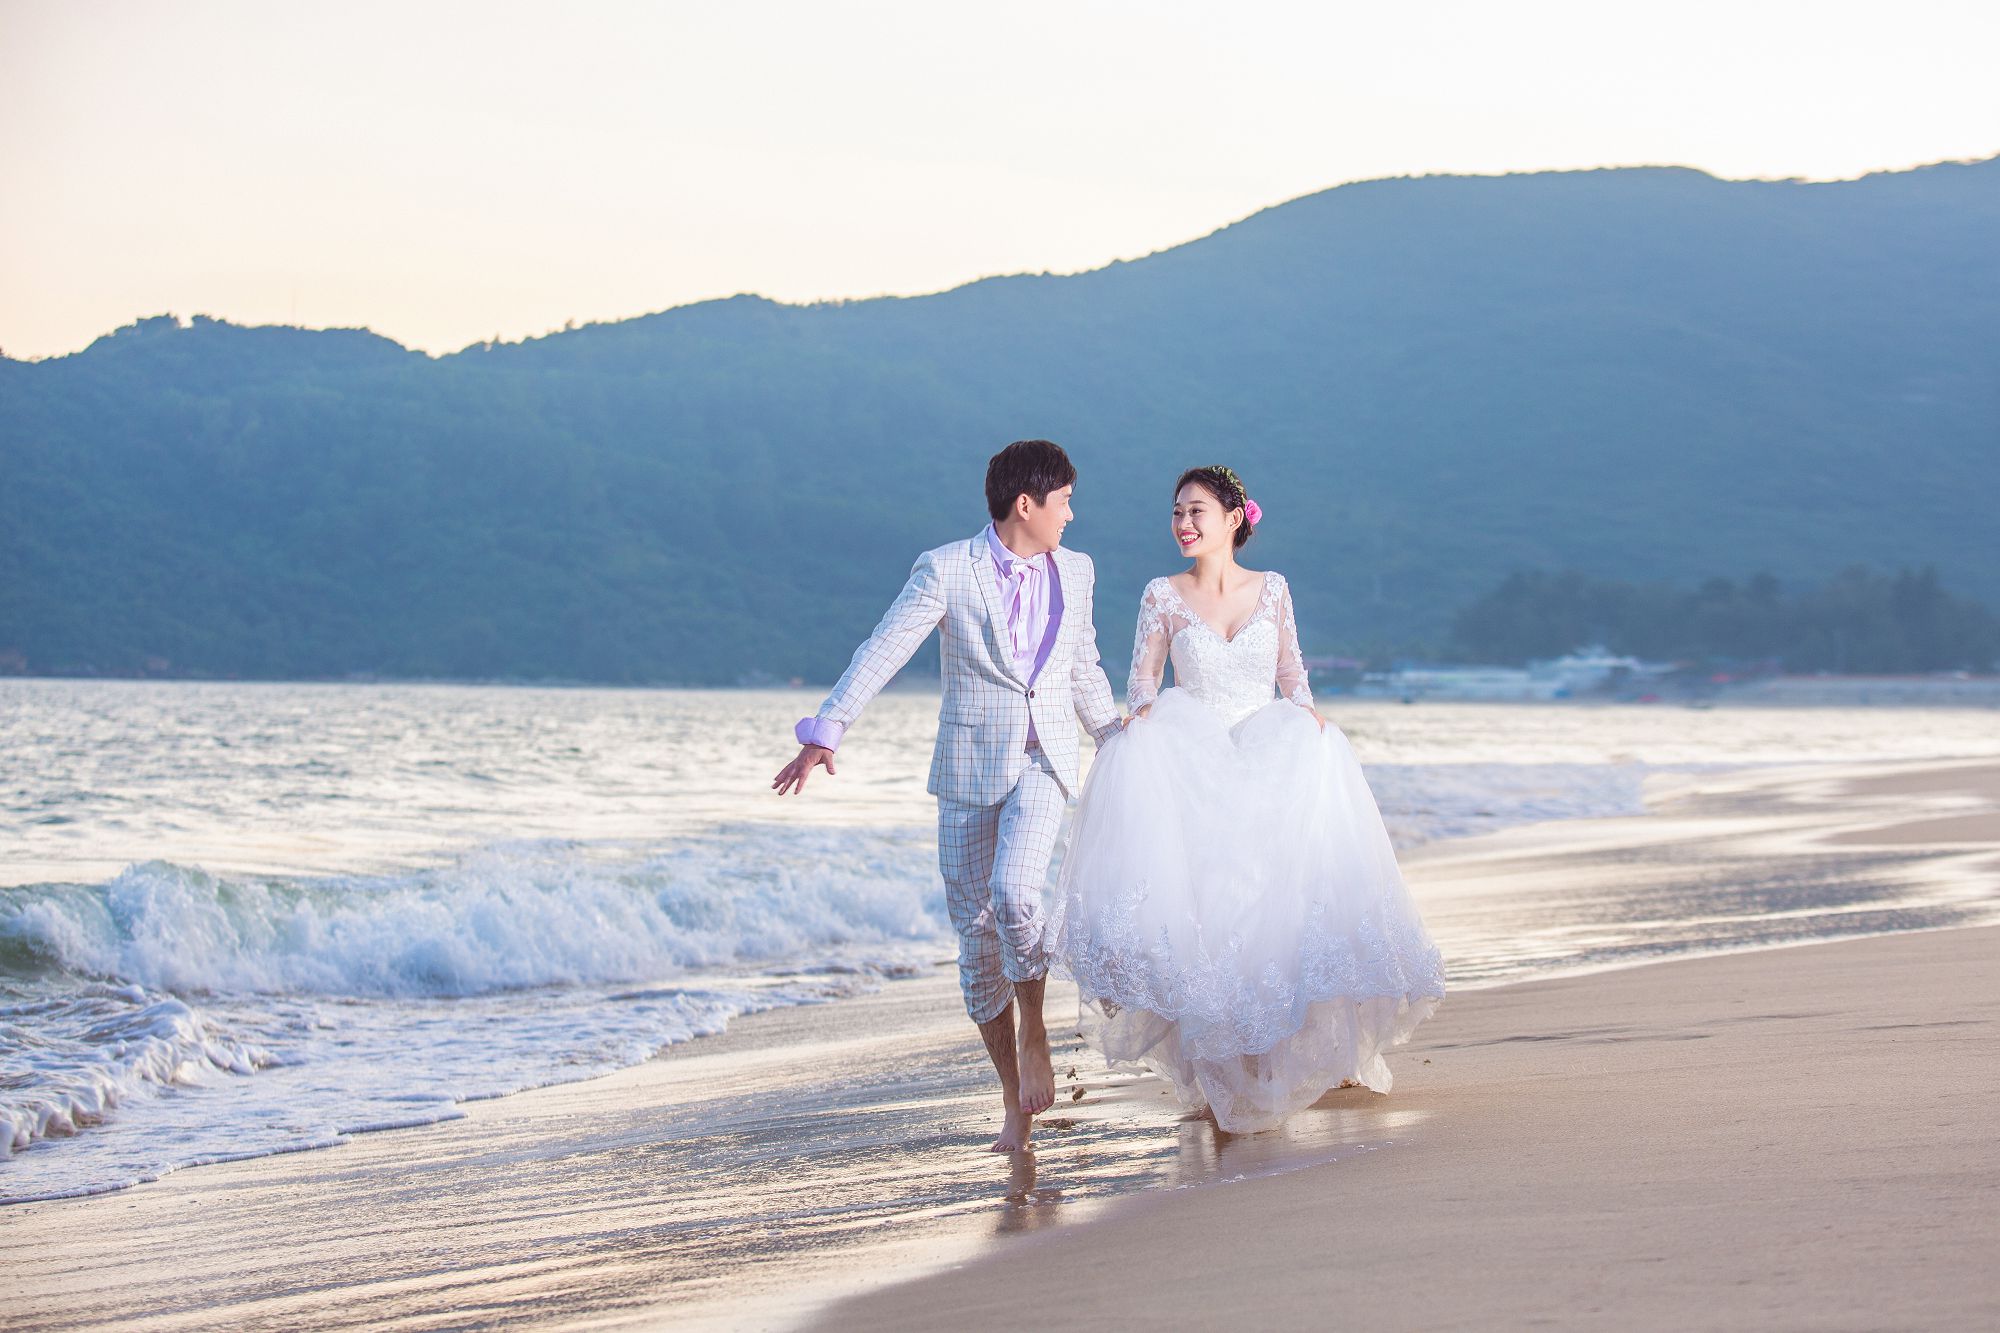 2017年9月深圳结婚照,[海景, 沙滩],深圳婚纱照,婚纱照图片